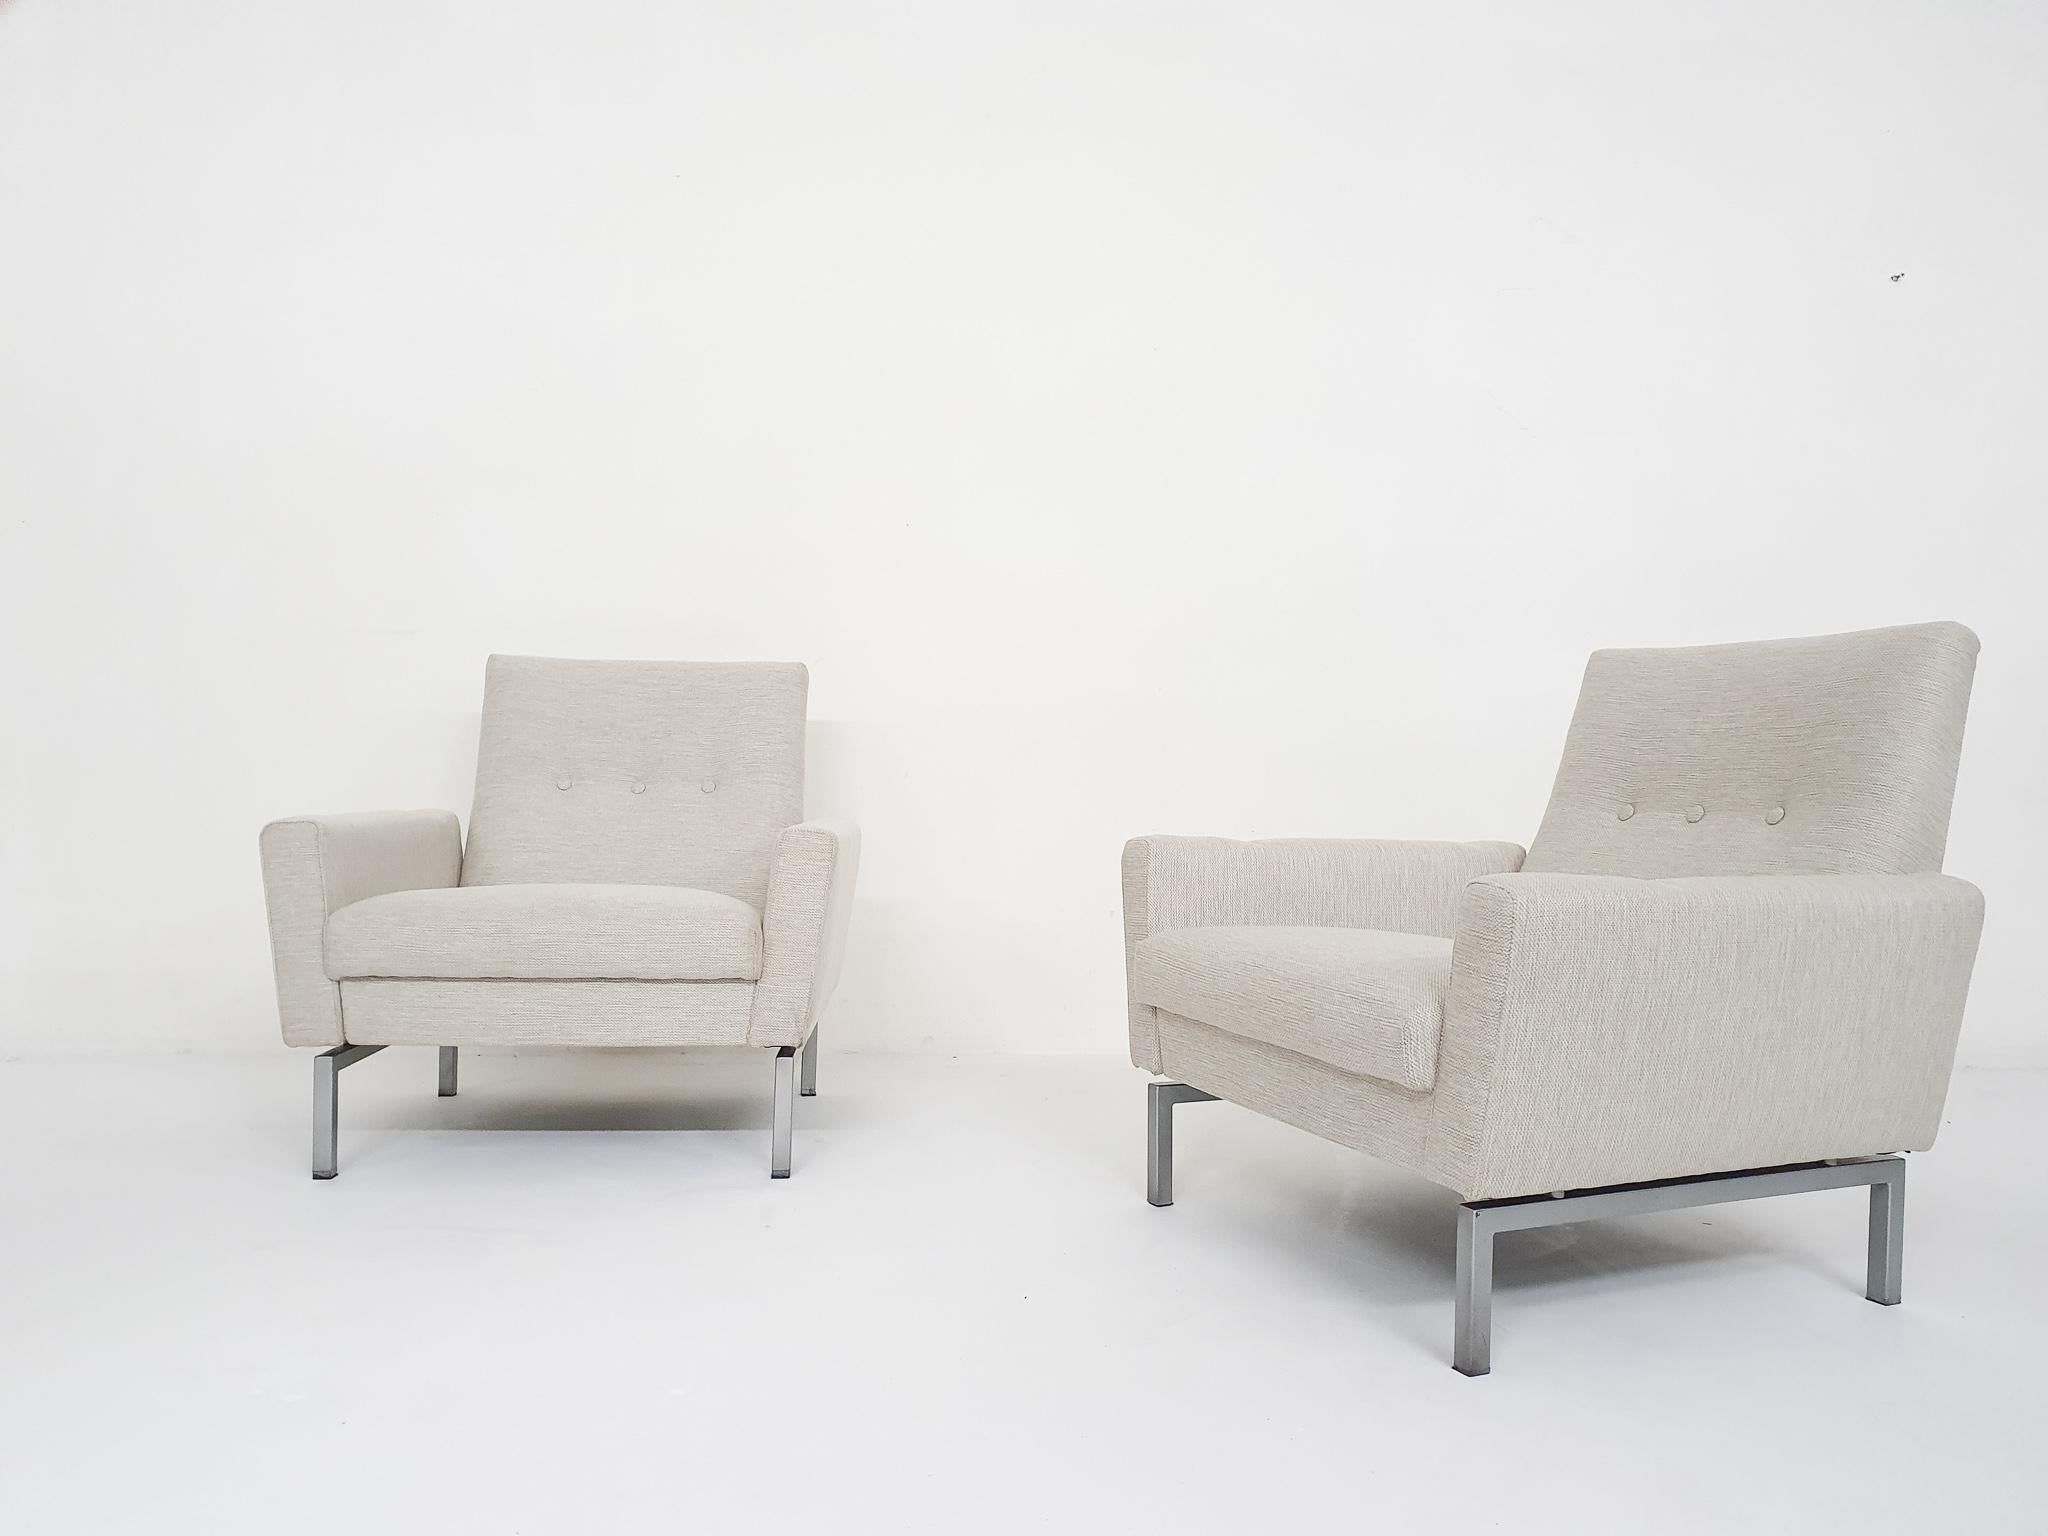 Satz von zwei Mid-Century Modern Lounge Stühlen attr. Artifort. Silbergrauer Metallrahmen und neue, weiße Polsterung. Die Niederlande 1950er Jahre.